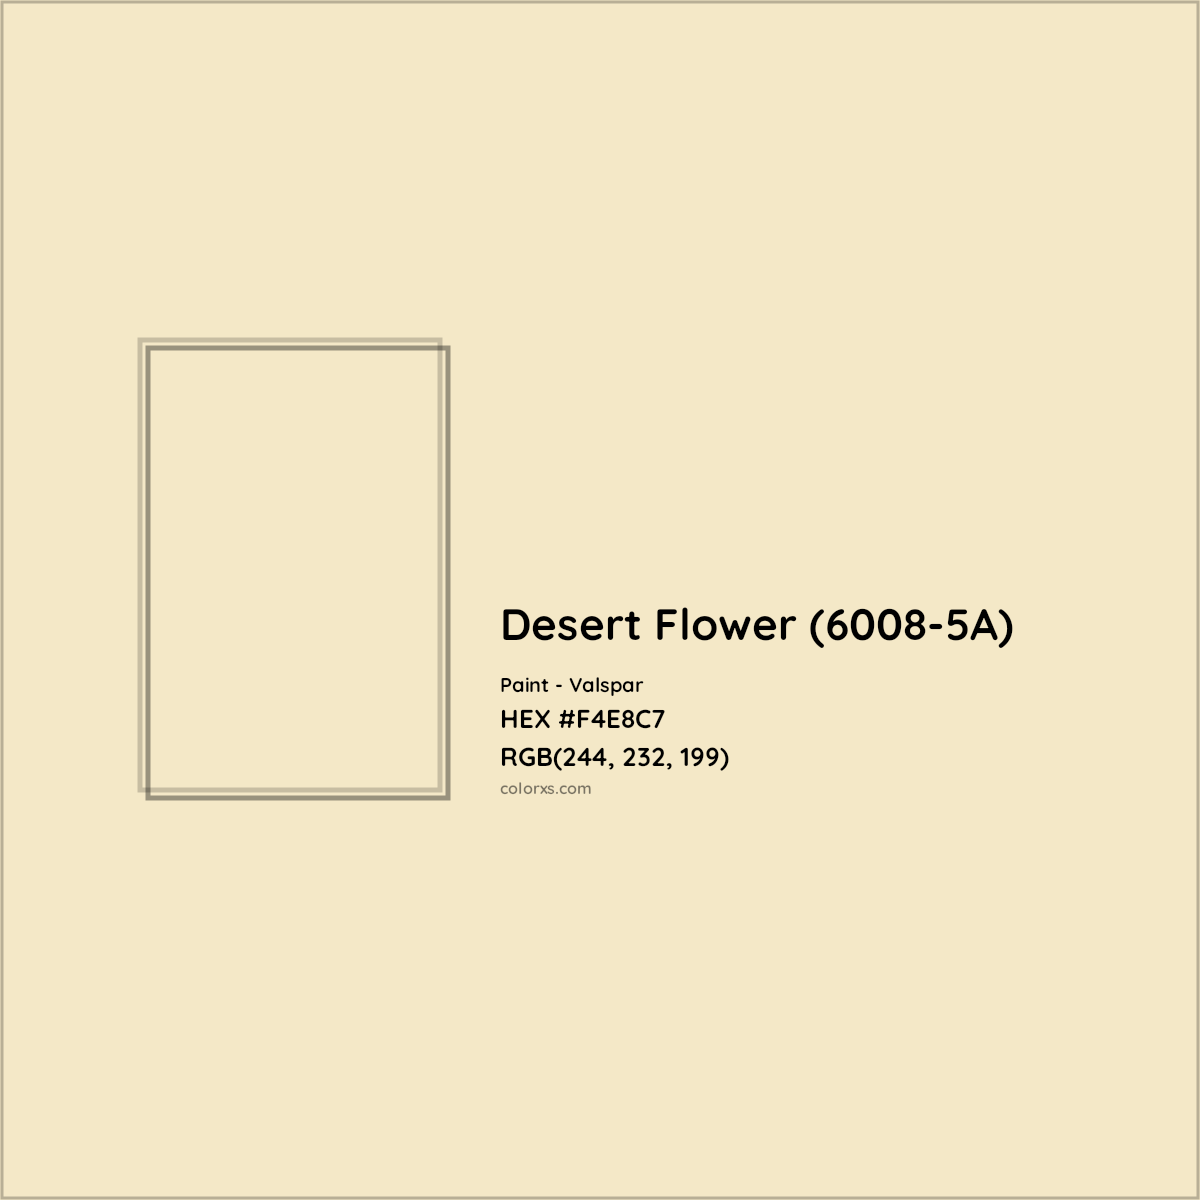 HEX #F4E8C7 Desert Flower (6008-5A) Paint Valspar - Color Code